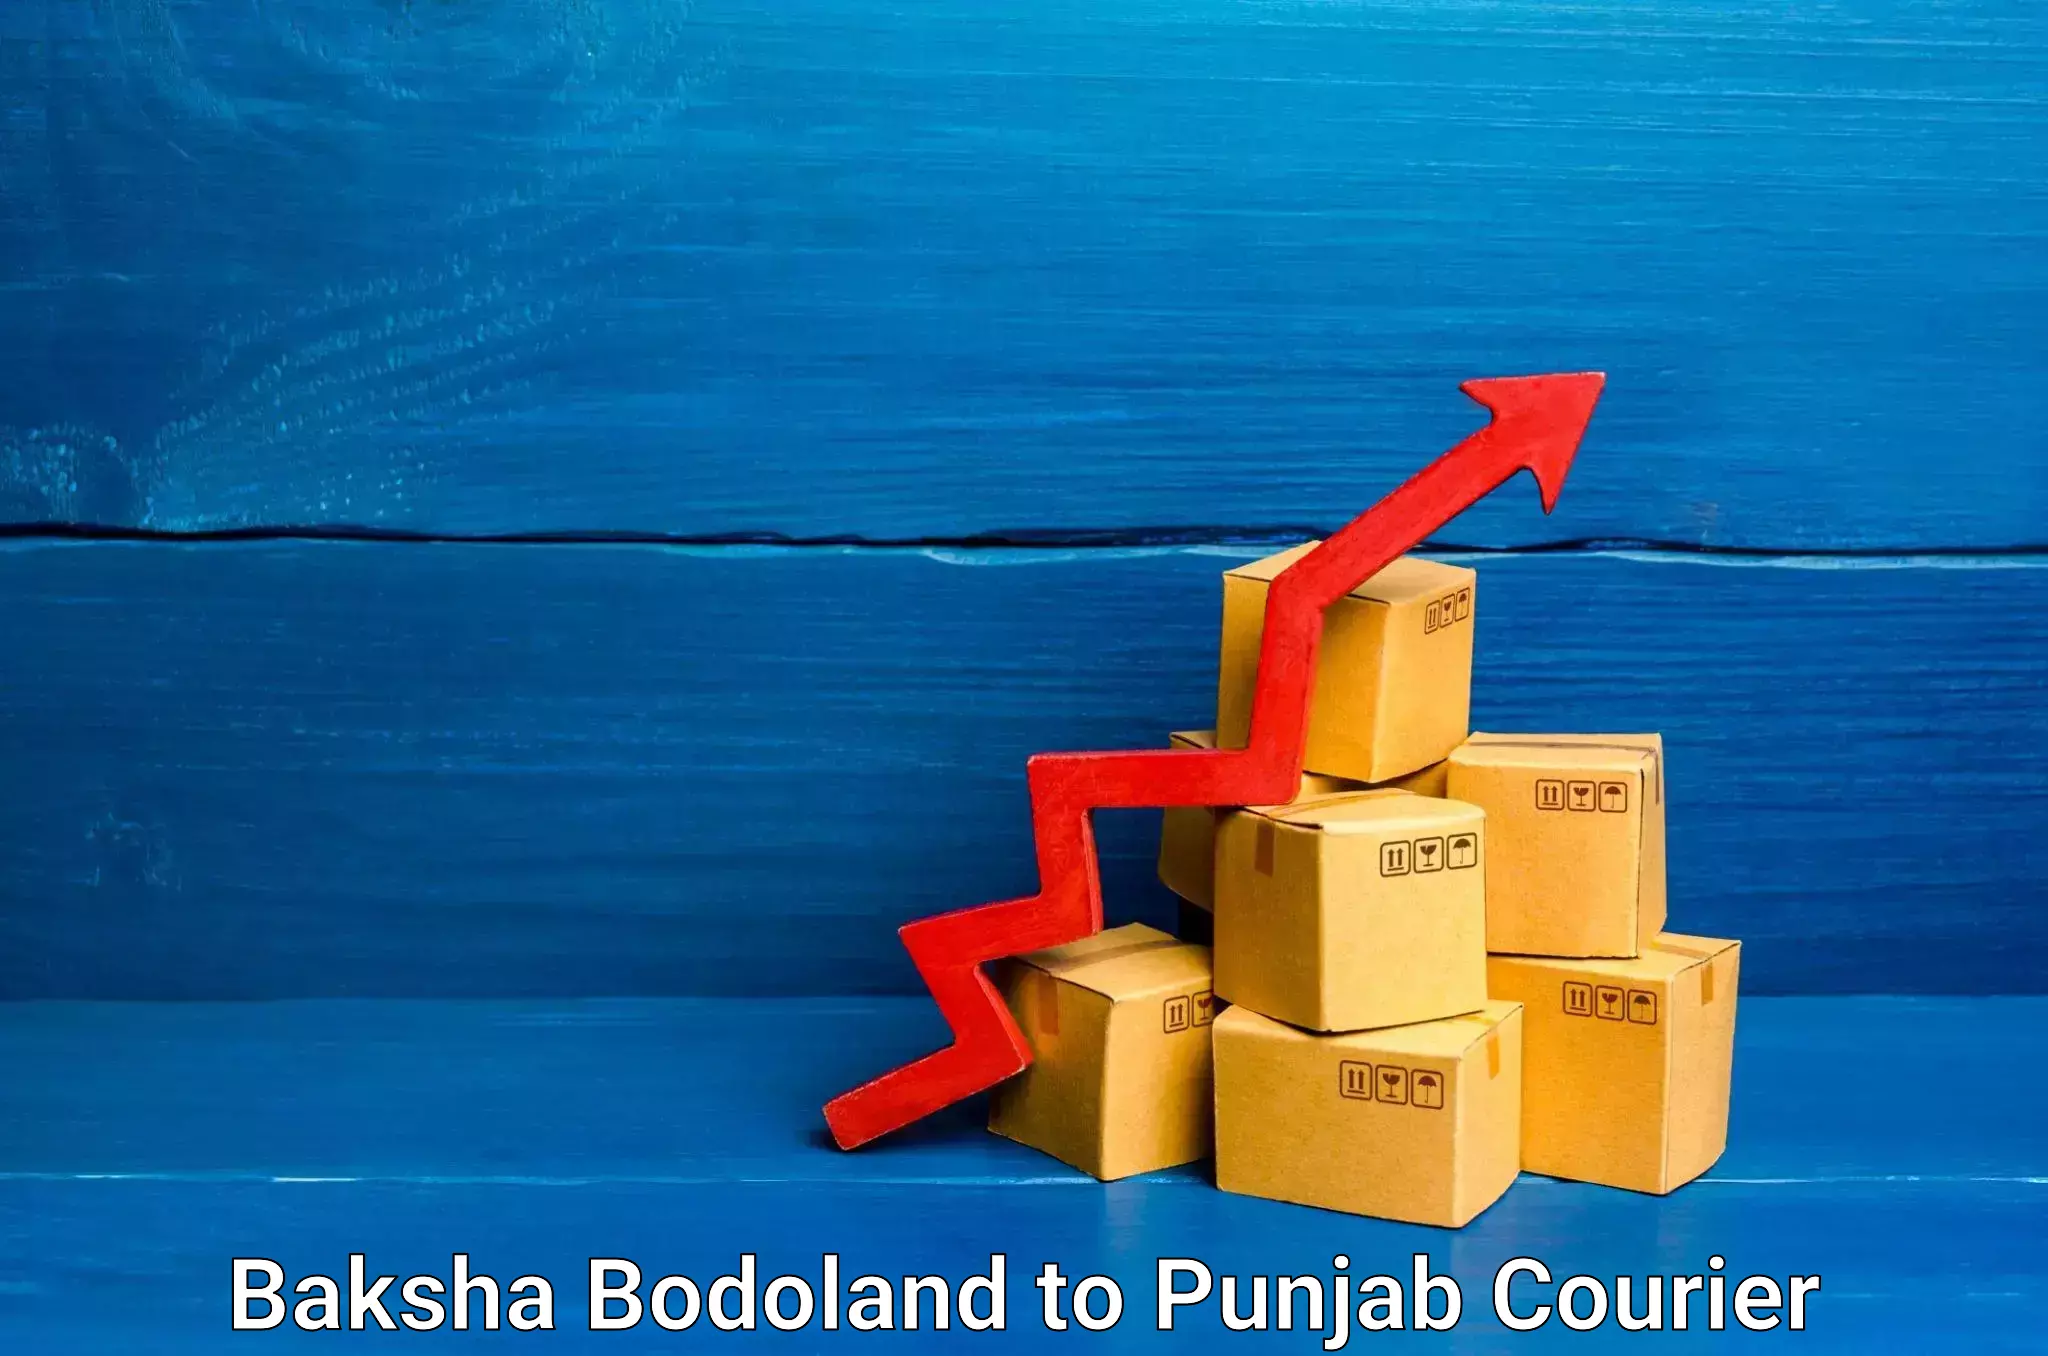 Air courier services Baksha Bodoland to Punjab